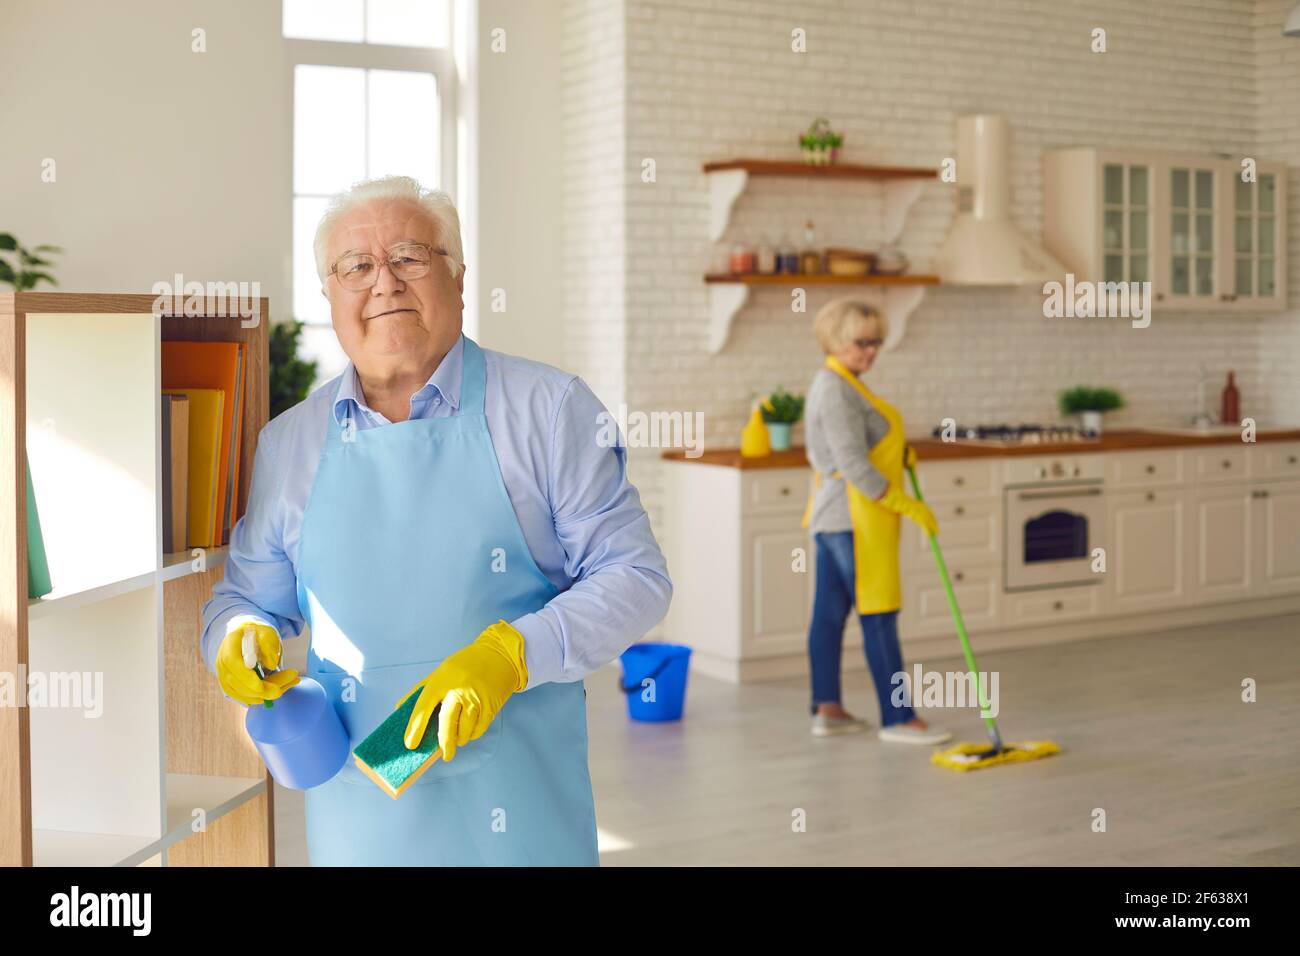 Der ältere Mann wischt die Regale mit einem Waschlappen und Waschmittel,  während seine Frau den Boden wäscht Stockfotografie - Alamy